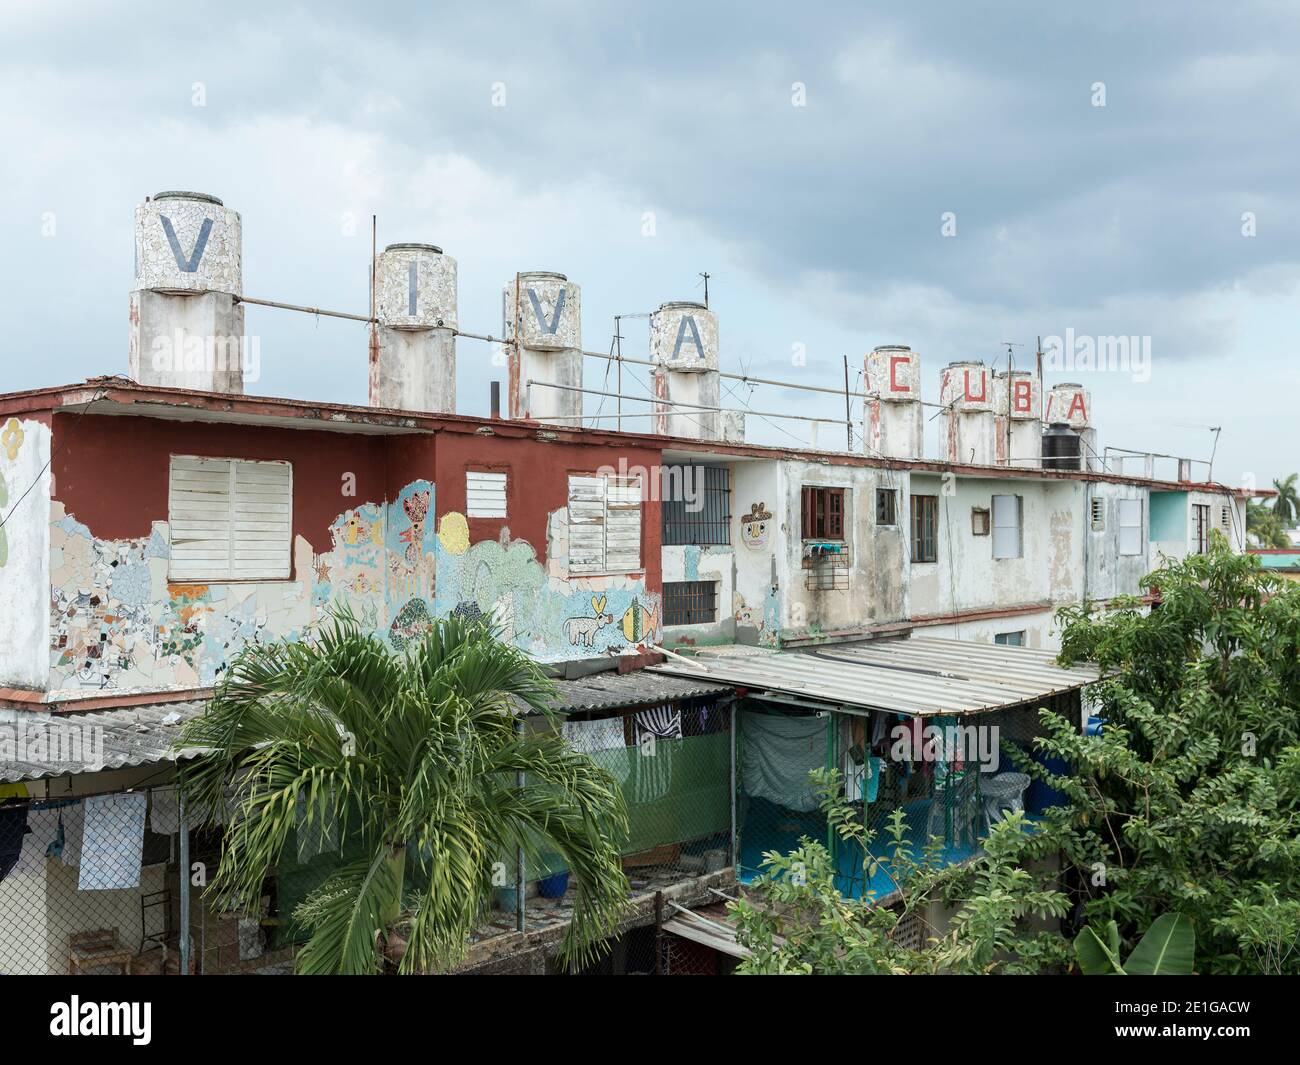 Fusterlandia ist ein Projekt am Stadtrand von Havanna, Kuba, das vor etwa 20 Jahren begann und mehrere Vorstadtblocks mit stilisierter öffentlicher Kunst umfasst Stockfoto